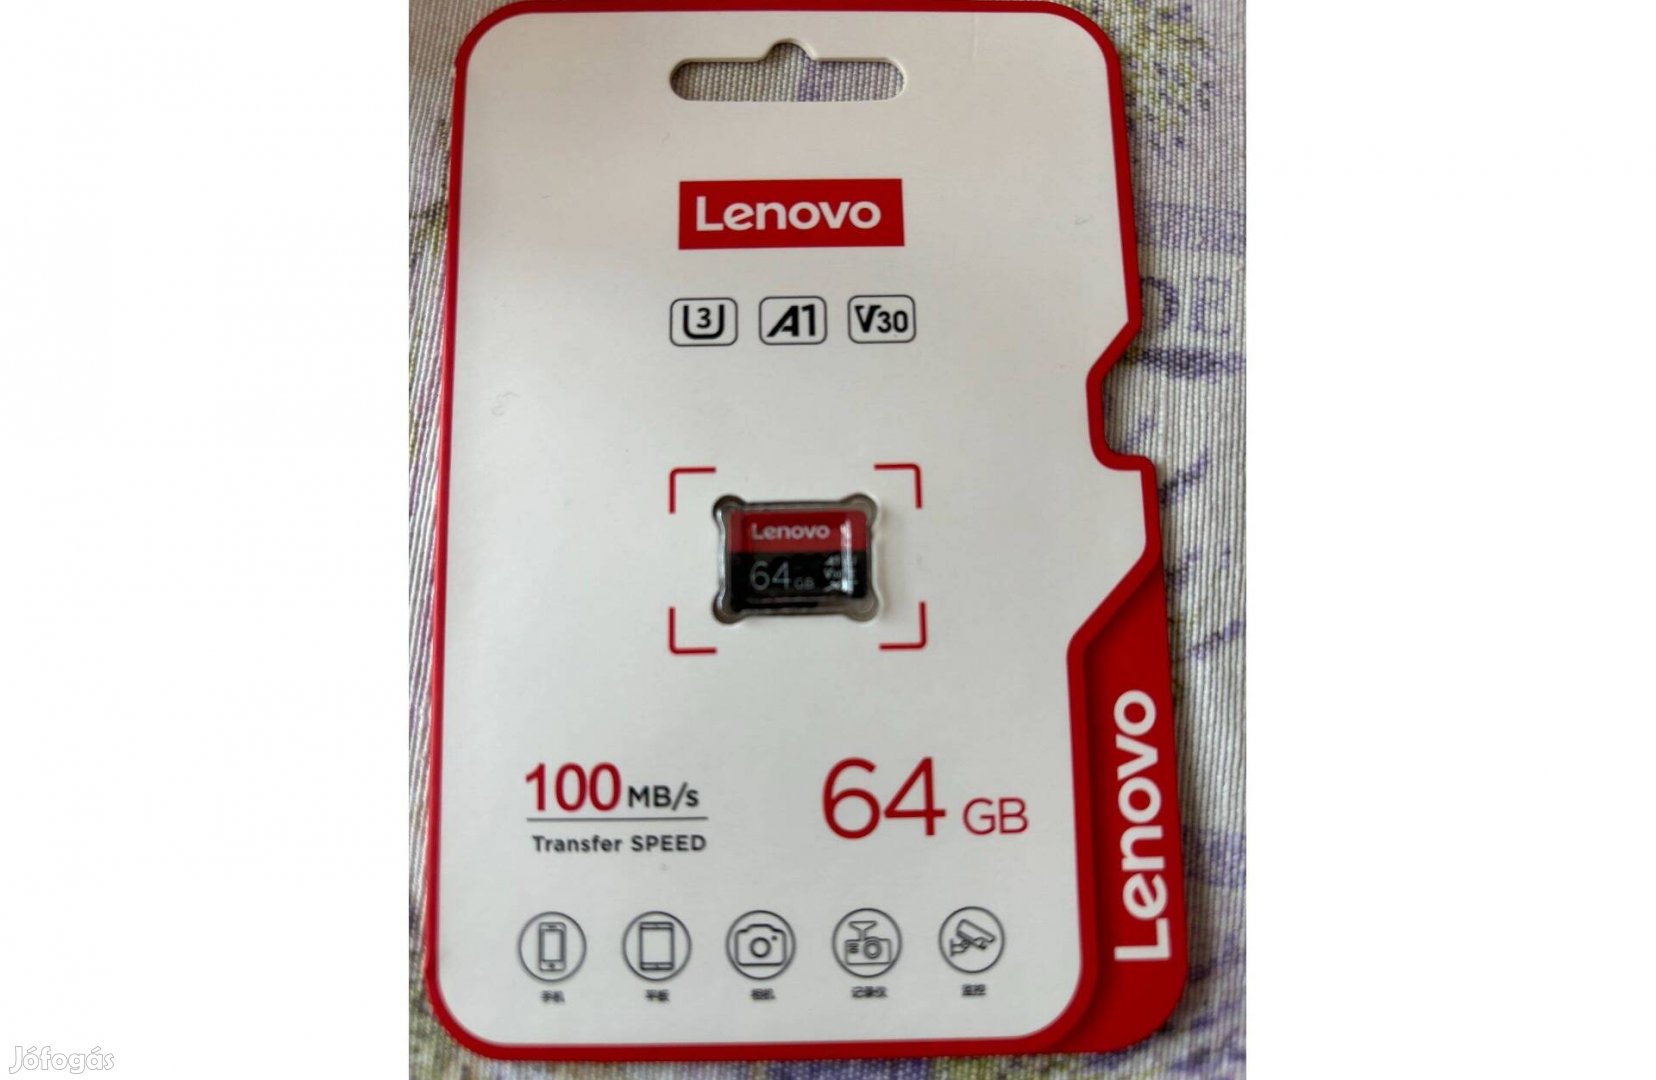 Új bontatlan Lenovo 64GB Micosd kártya 100MB/s